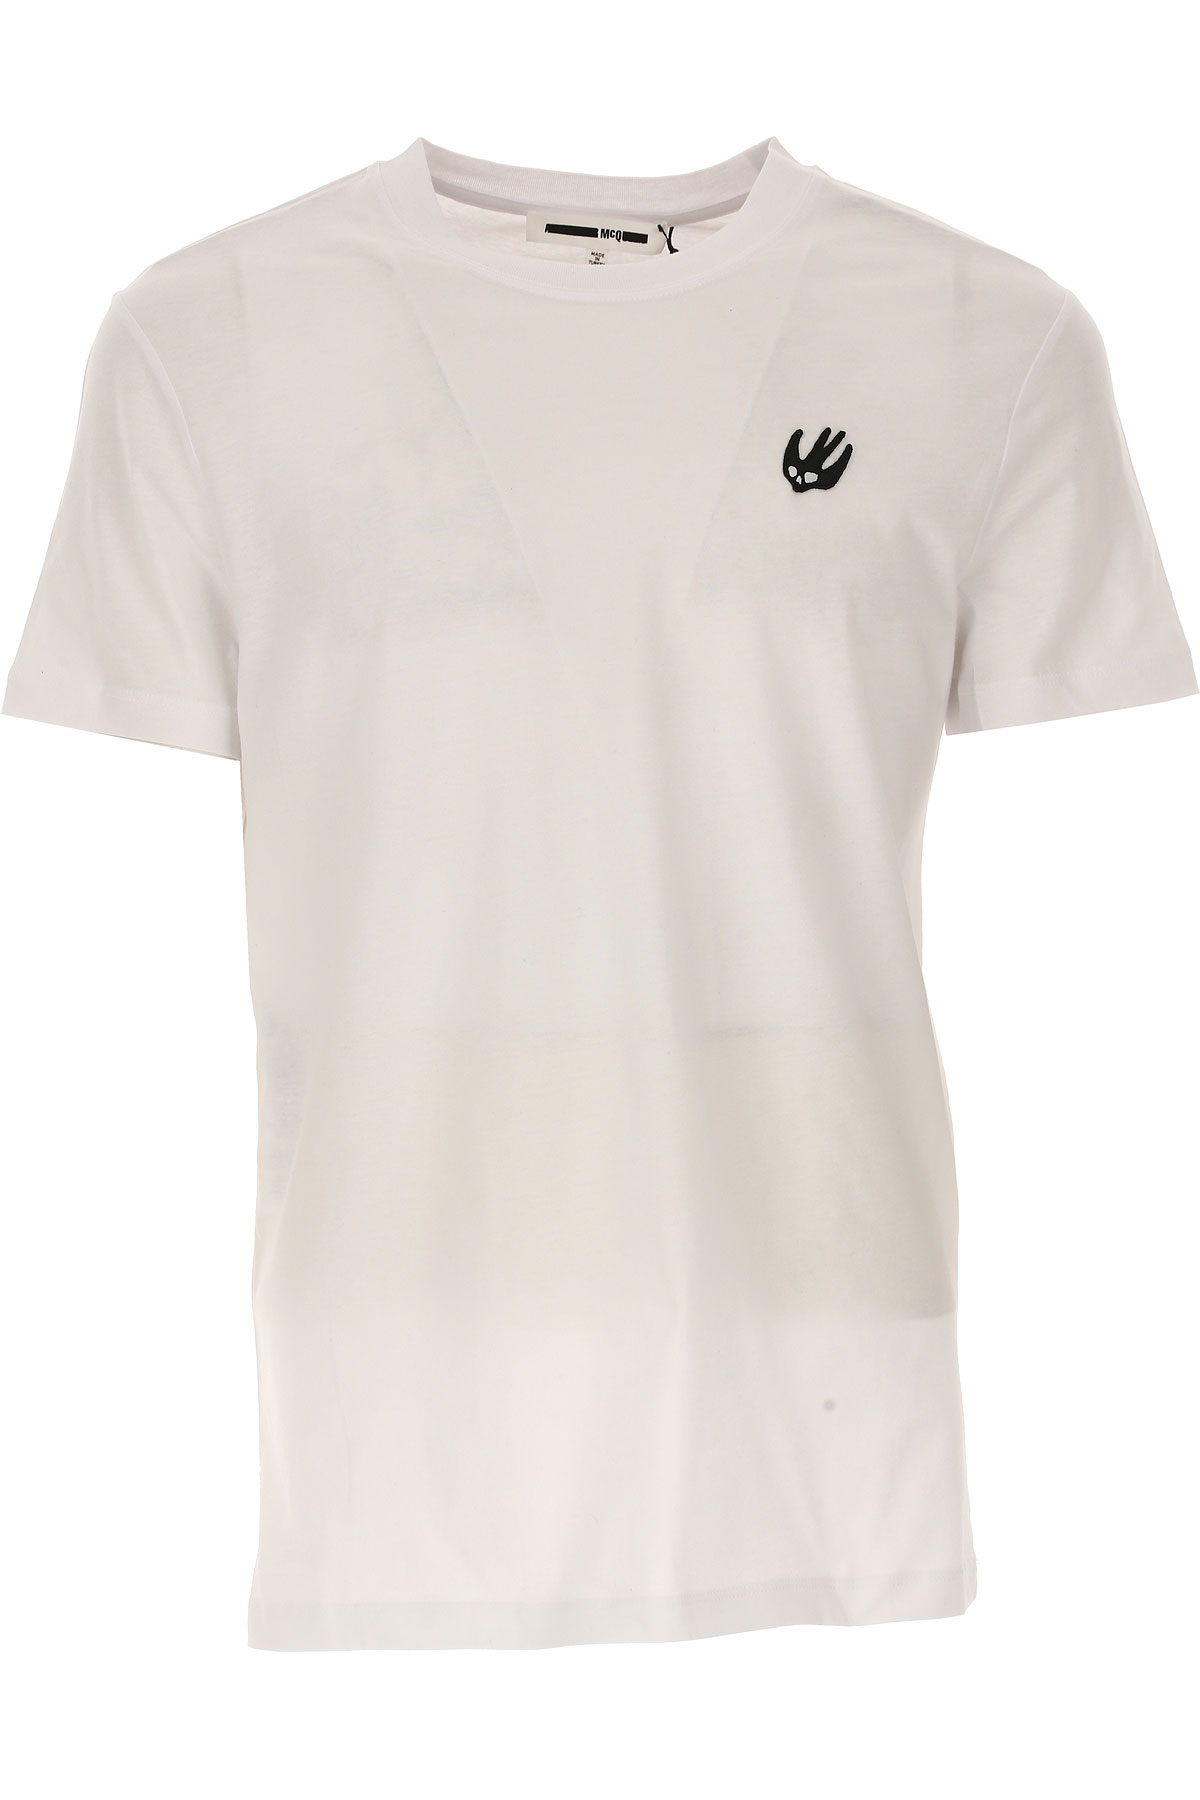 Alexander McQueen T-shirt Homme, Blanc, Coton, 2017, L M S